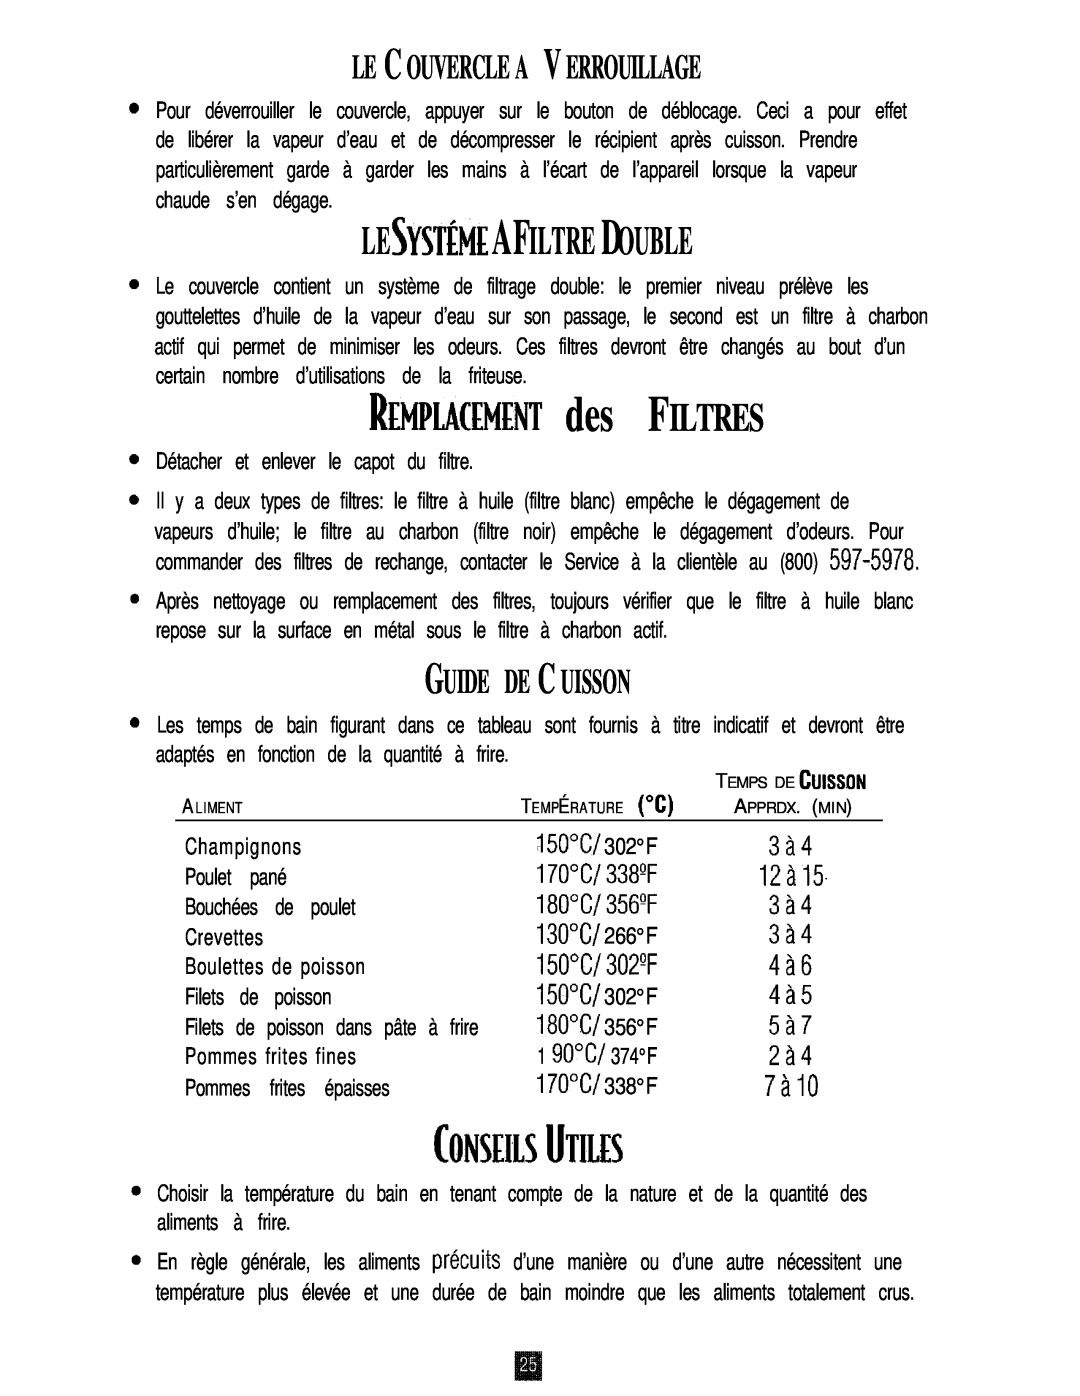 Oster 3246 manual Le C Ouvercle A V Errouillage, Le Systéme Afiltre Double, Guide De C Uisson, REMPLMEMENT des FILTRES 